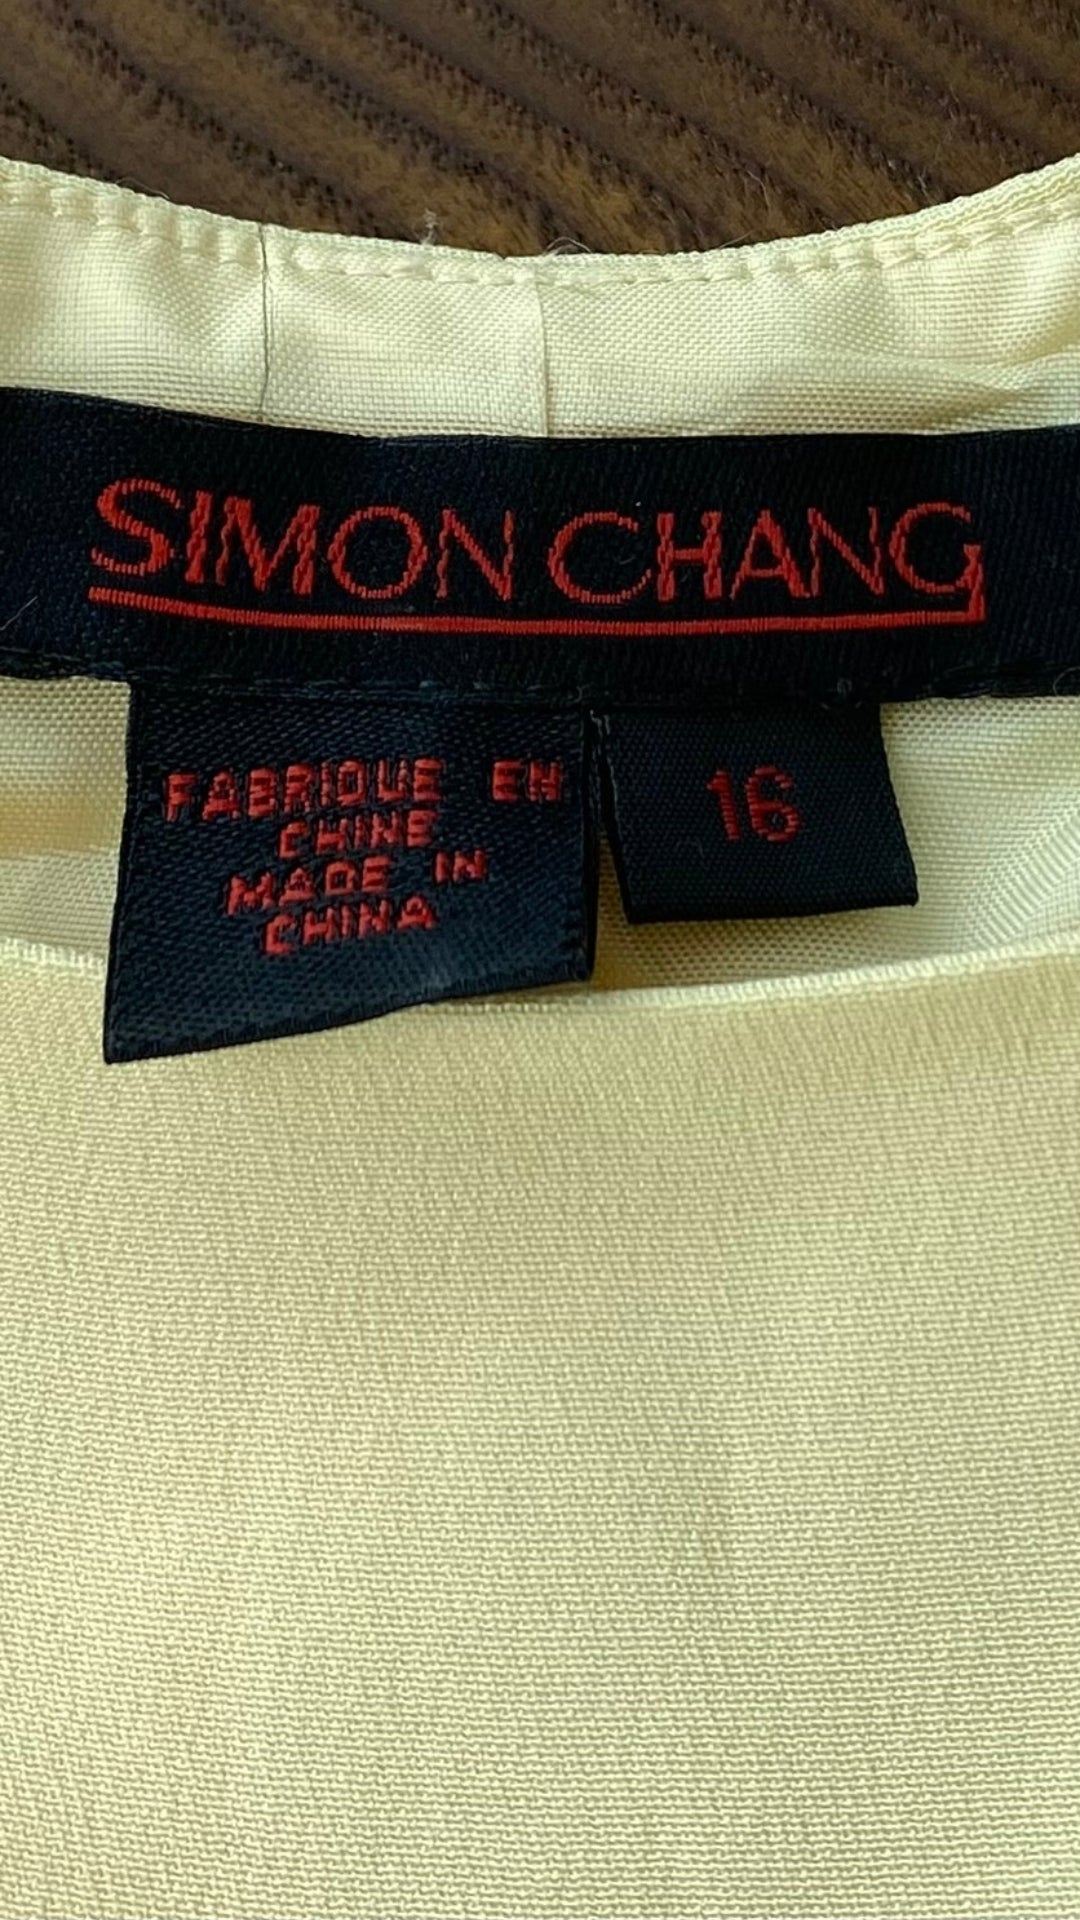 Camisole doublée en soie jaune doux Simon Chang, taille 16. Vue de l'étiquette de marque et taille.